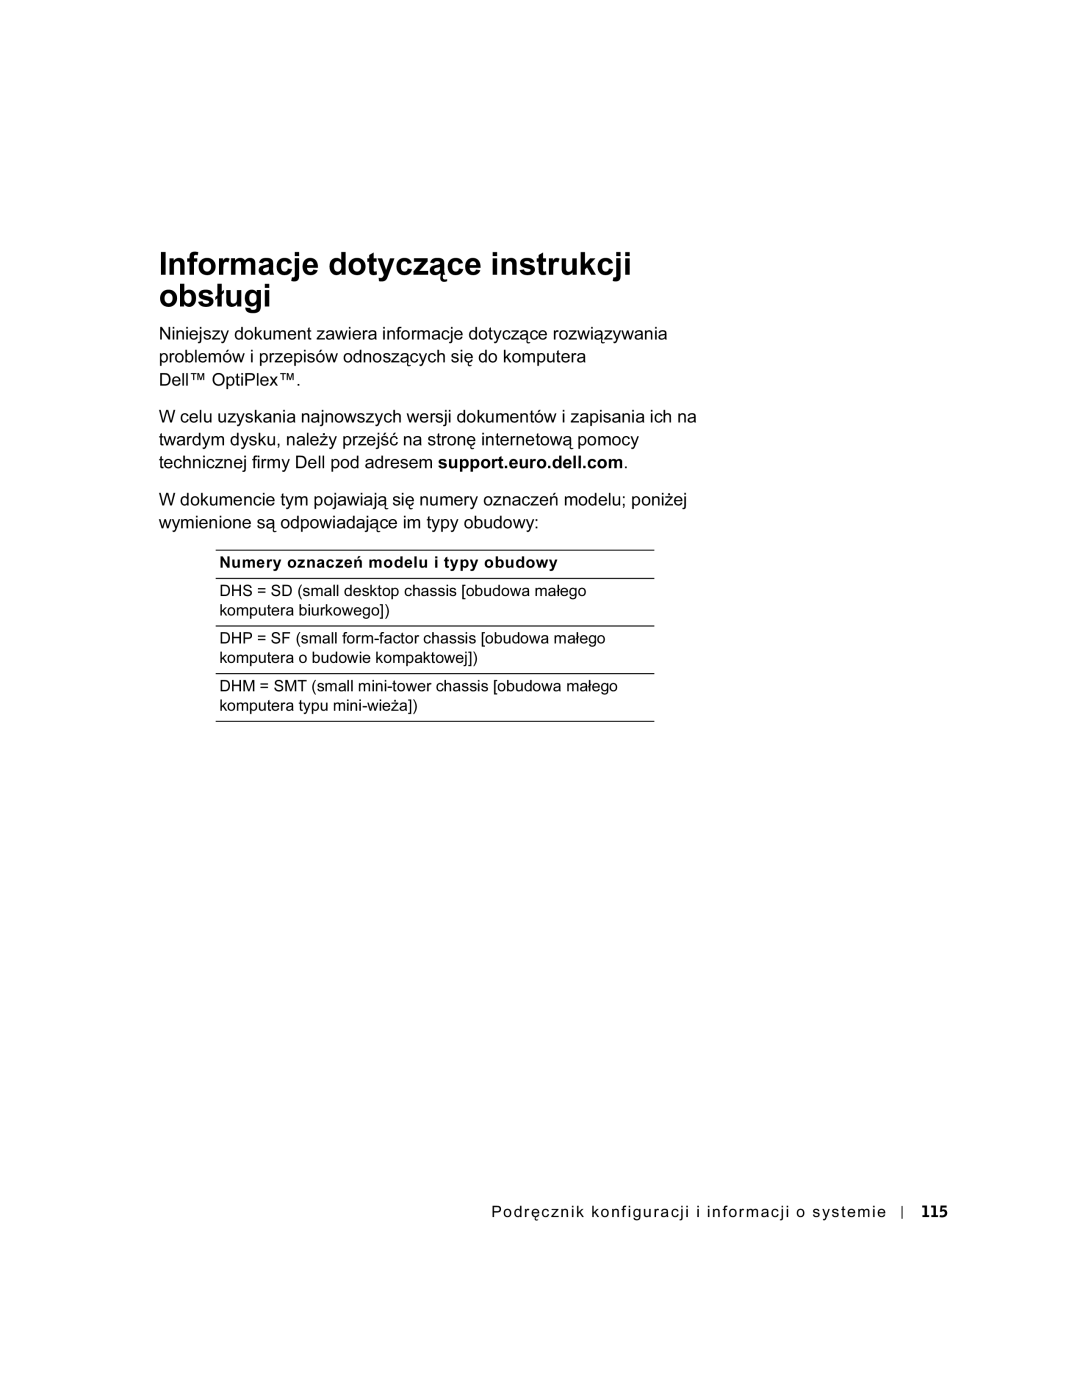 Dell GX60 manual Informacje dotyczące instrukcji obsługi 